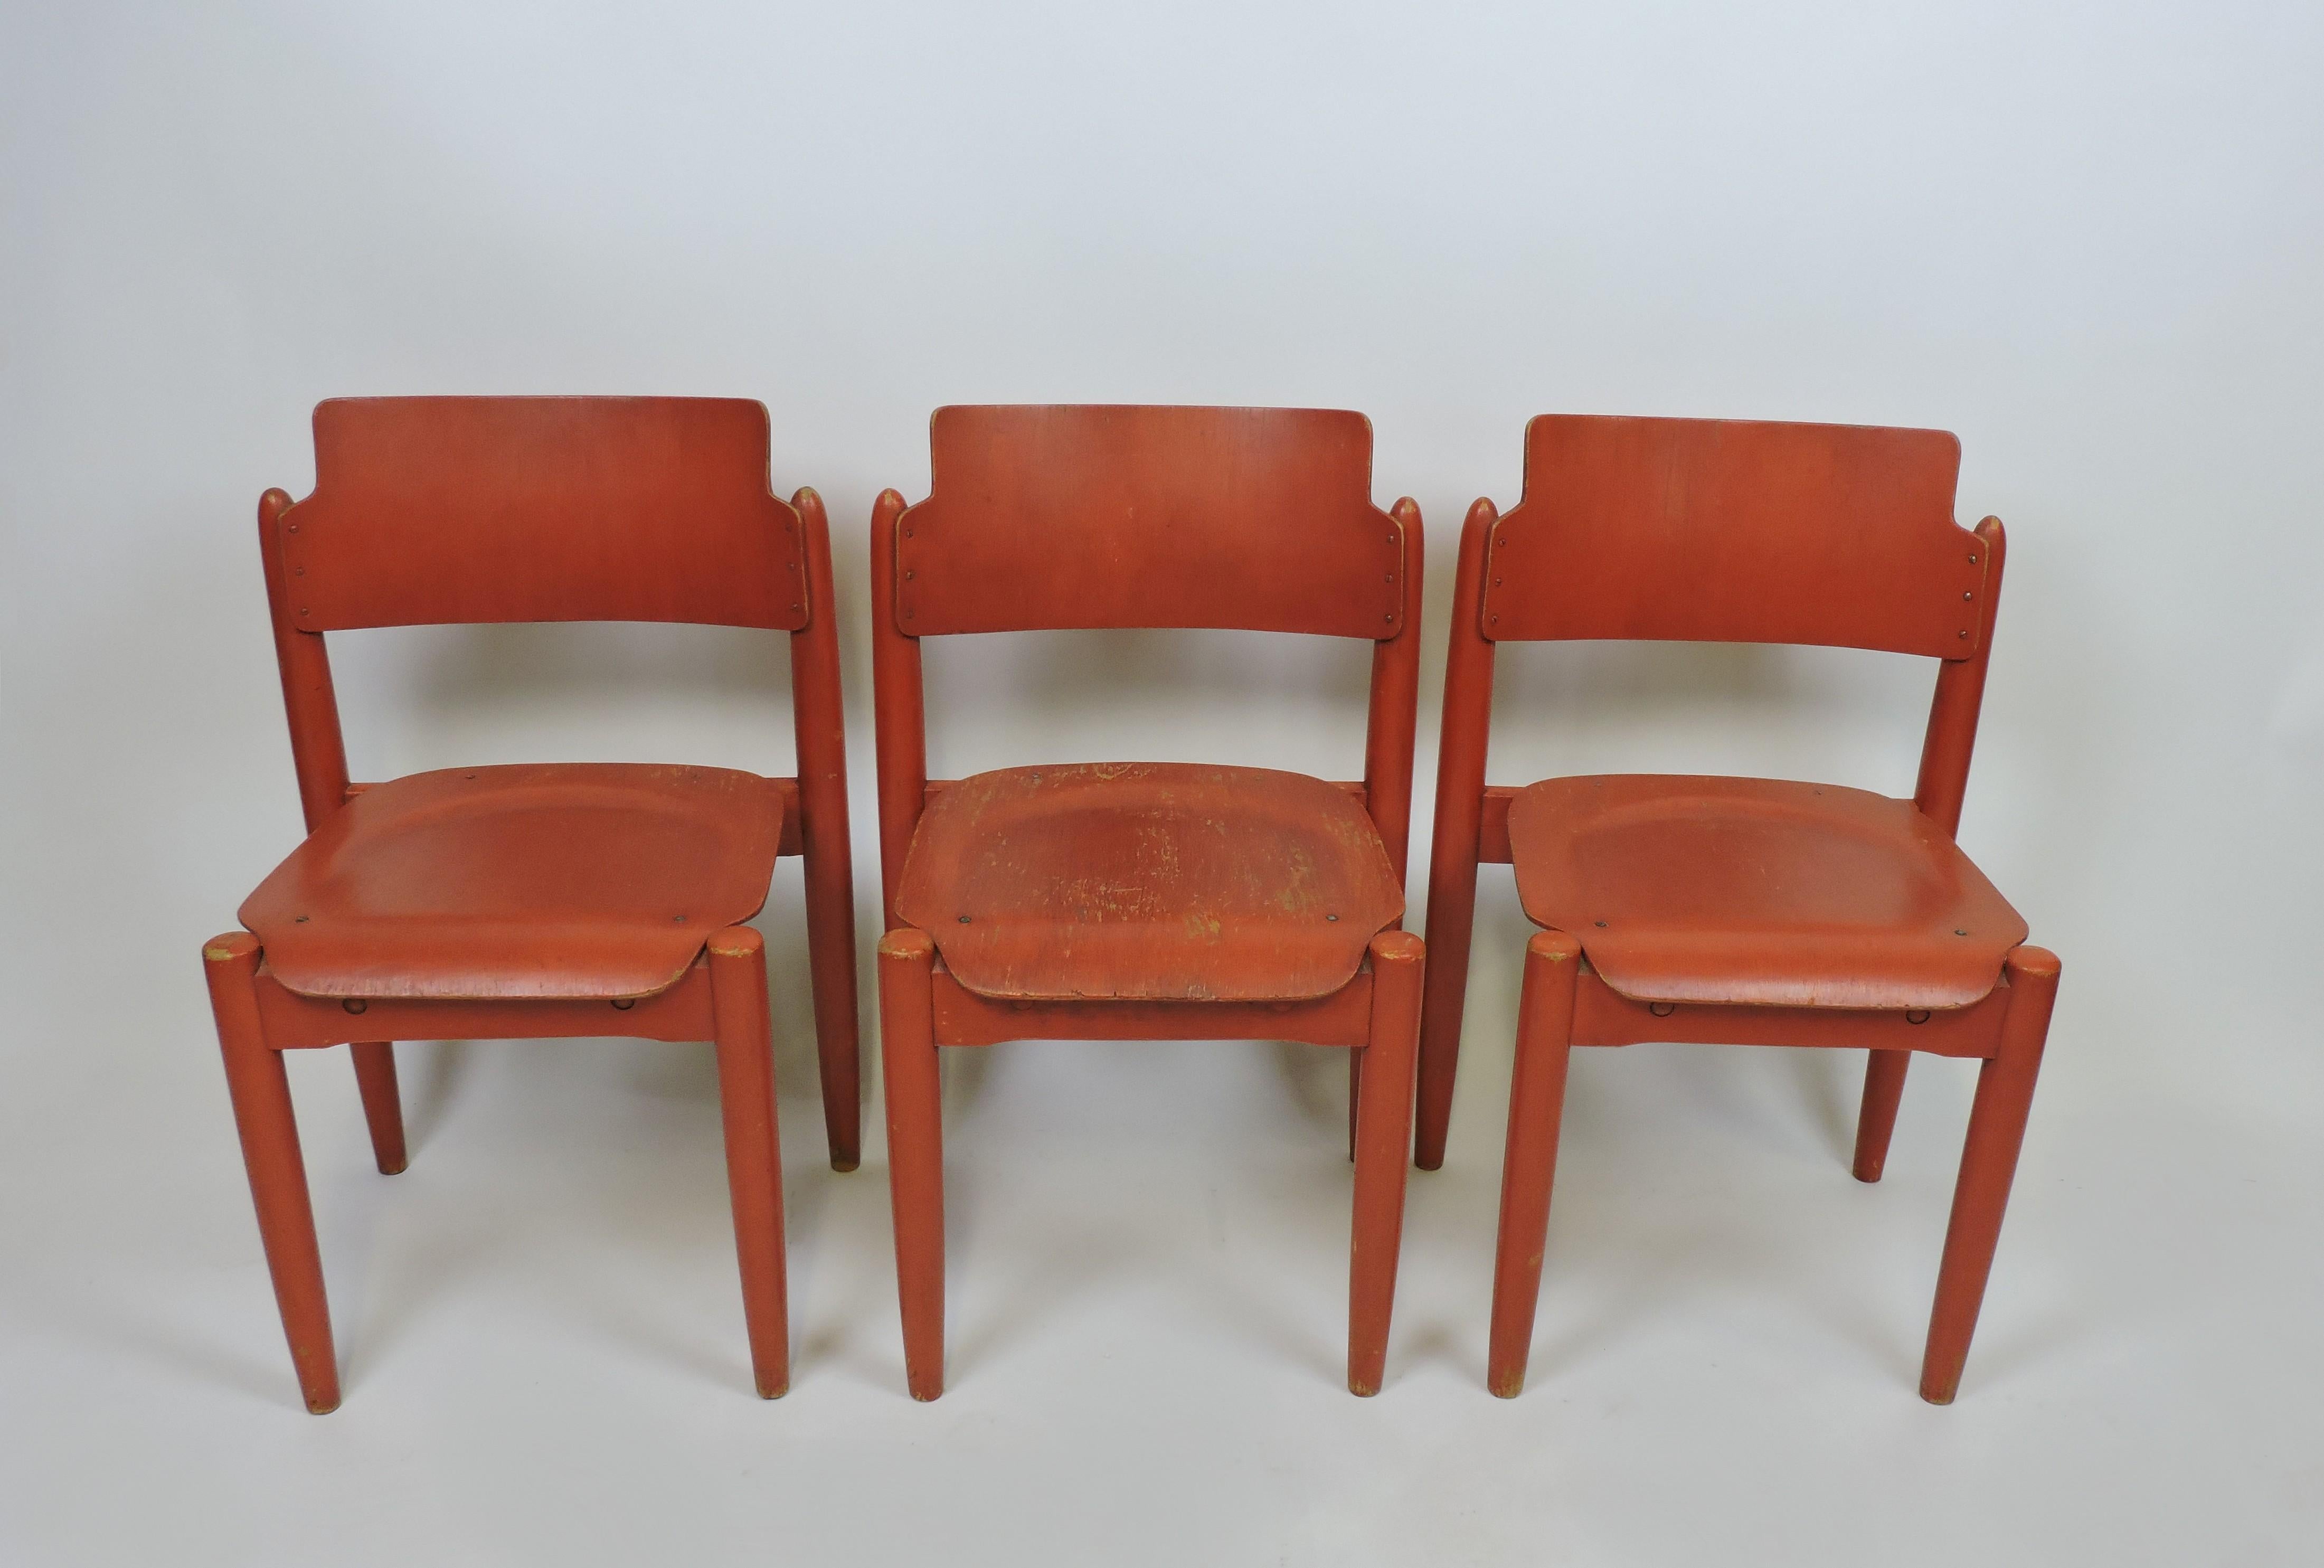 Lot de 3 rares chaises empilables Wilman conçues en 1956 par le célèbre designer finlandais Ilmari Tapiovaara et fabriquées en Finlande par Wilhelm Schauman Fanerfabrik. 
Ces chaises innovantes sont fabriquées avec une assise et un dossier en